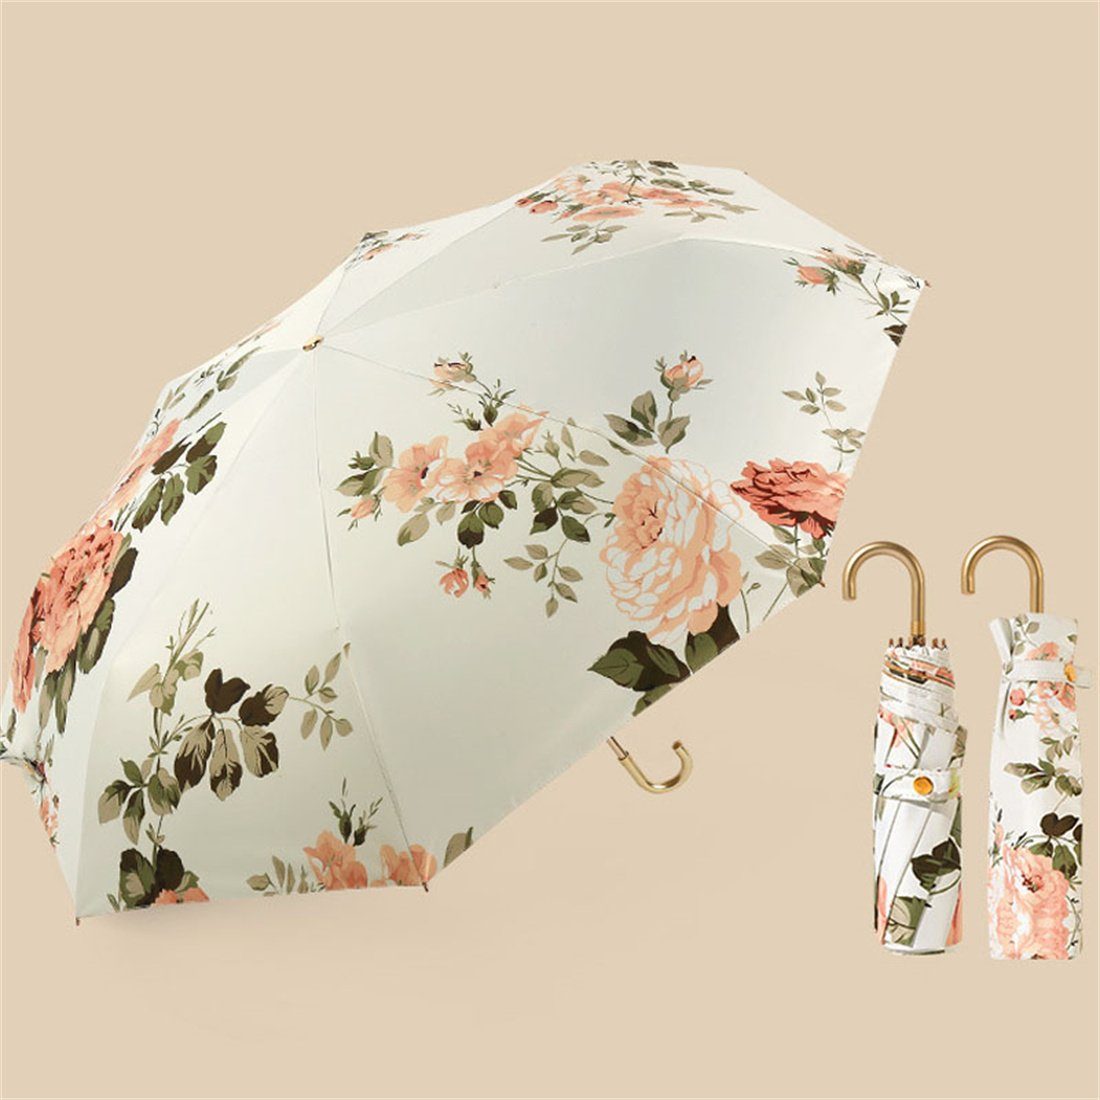 UV-Faltschirm,Tragbarer DÖRÖY Regenschirm,Goldener Taschenregenschirm Haken-Regenschirm